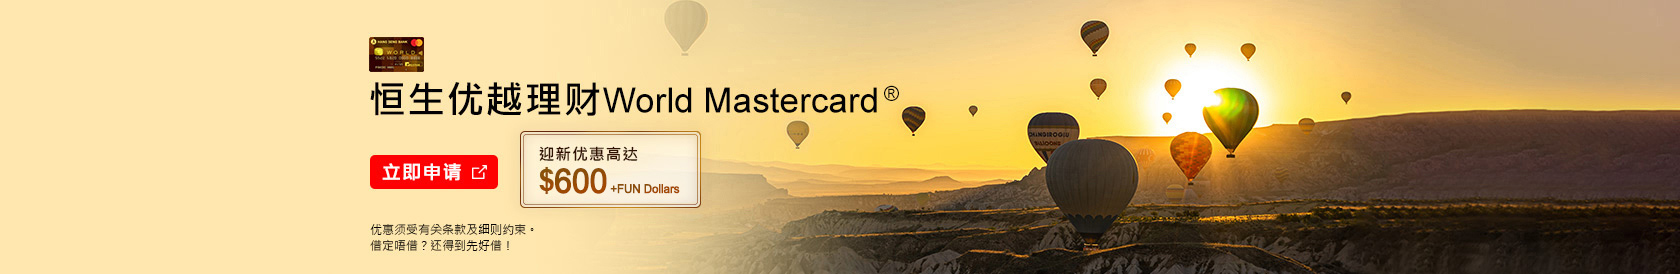 立即申请，恒生优越理财World Mastercard®，迎新优惠高达$800 Cash Dollars